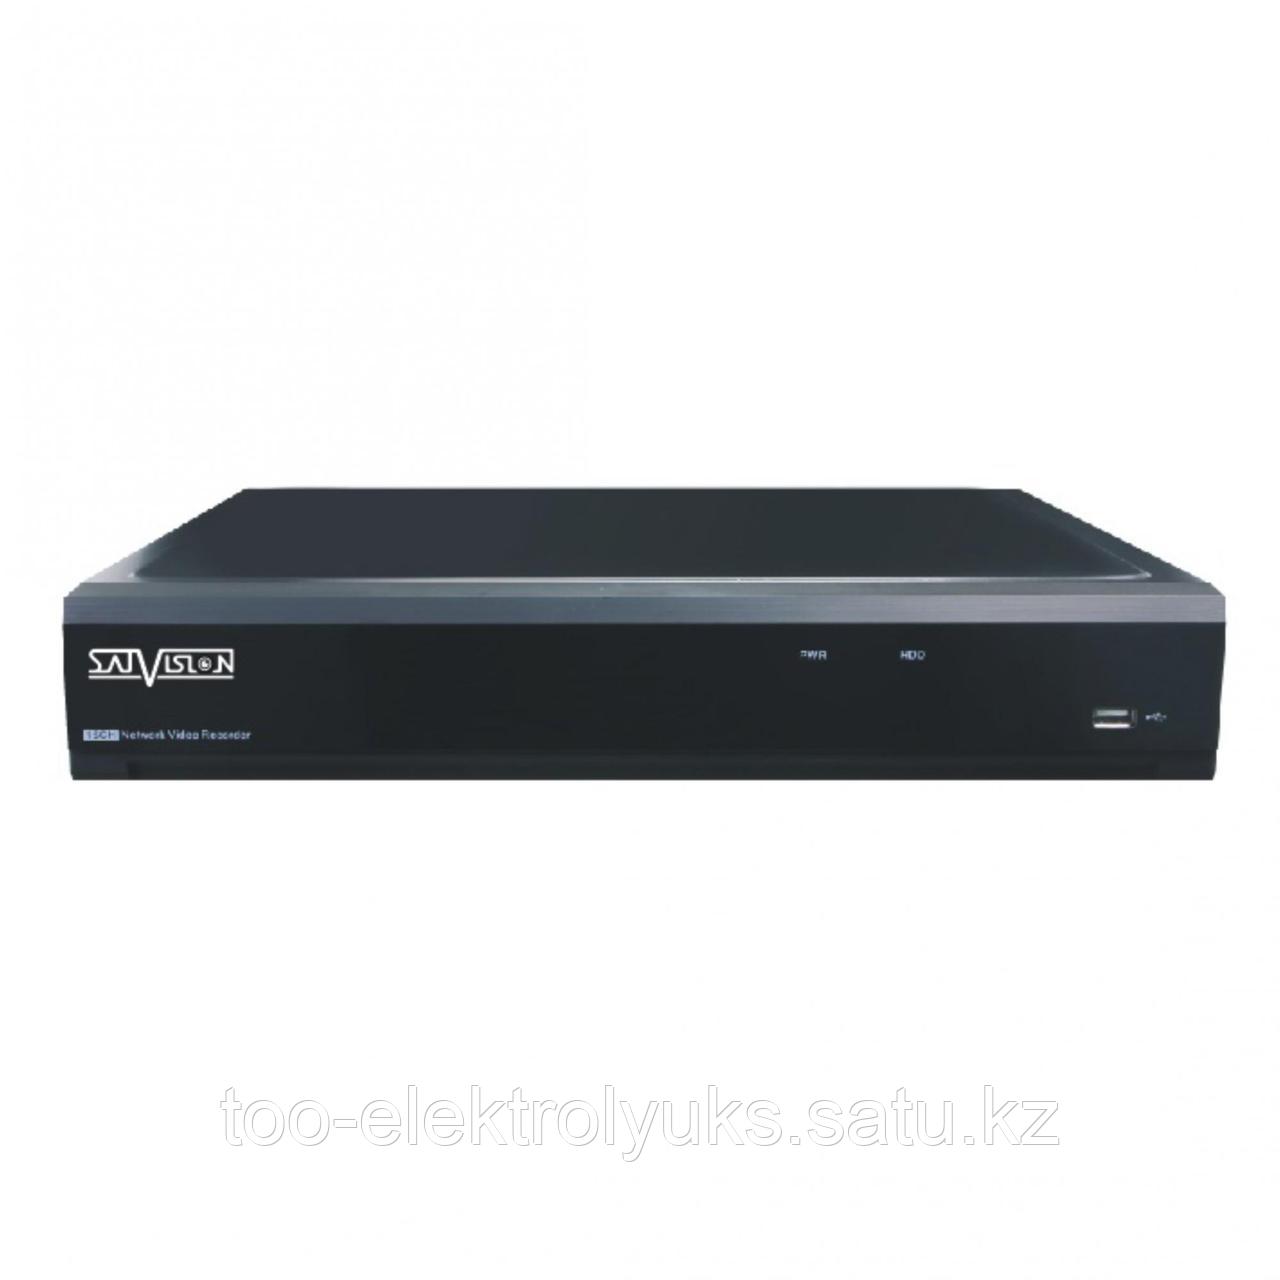 8-ми канальный регистратор SVR-8115N 8AHD*1080N-120к/с+4IP*1080p-100к/с, 4RCA/1RCA, VGA/HDMI